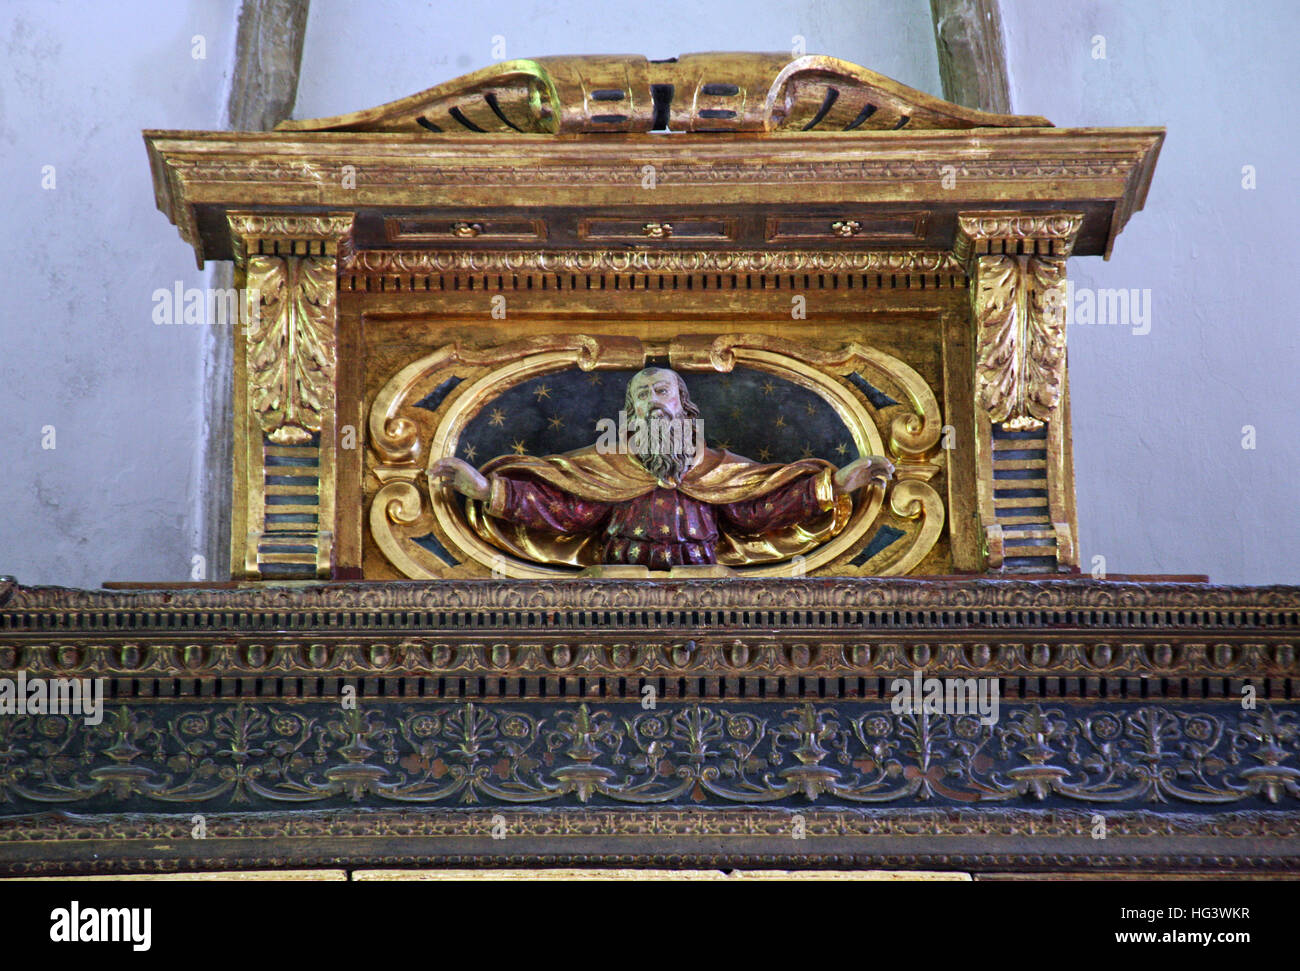 Dieu,altal secours supérieur,décoration,europe,Croatie Dubrovnik Banque D'Images